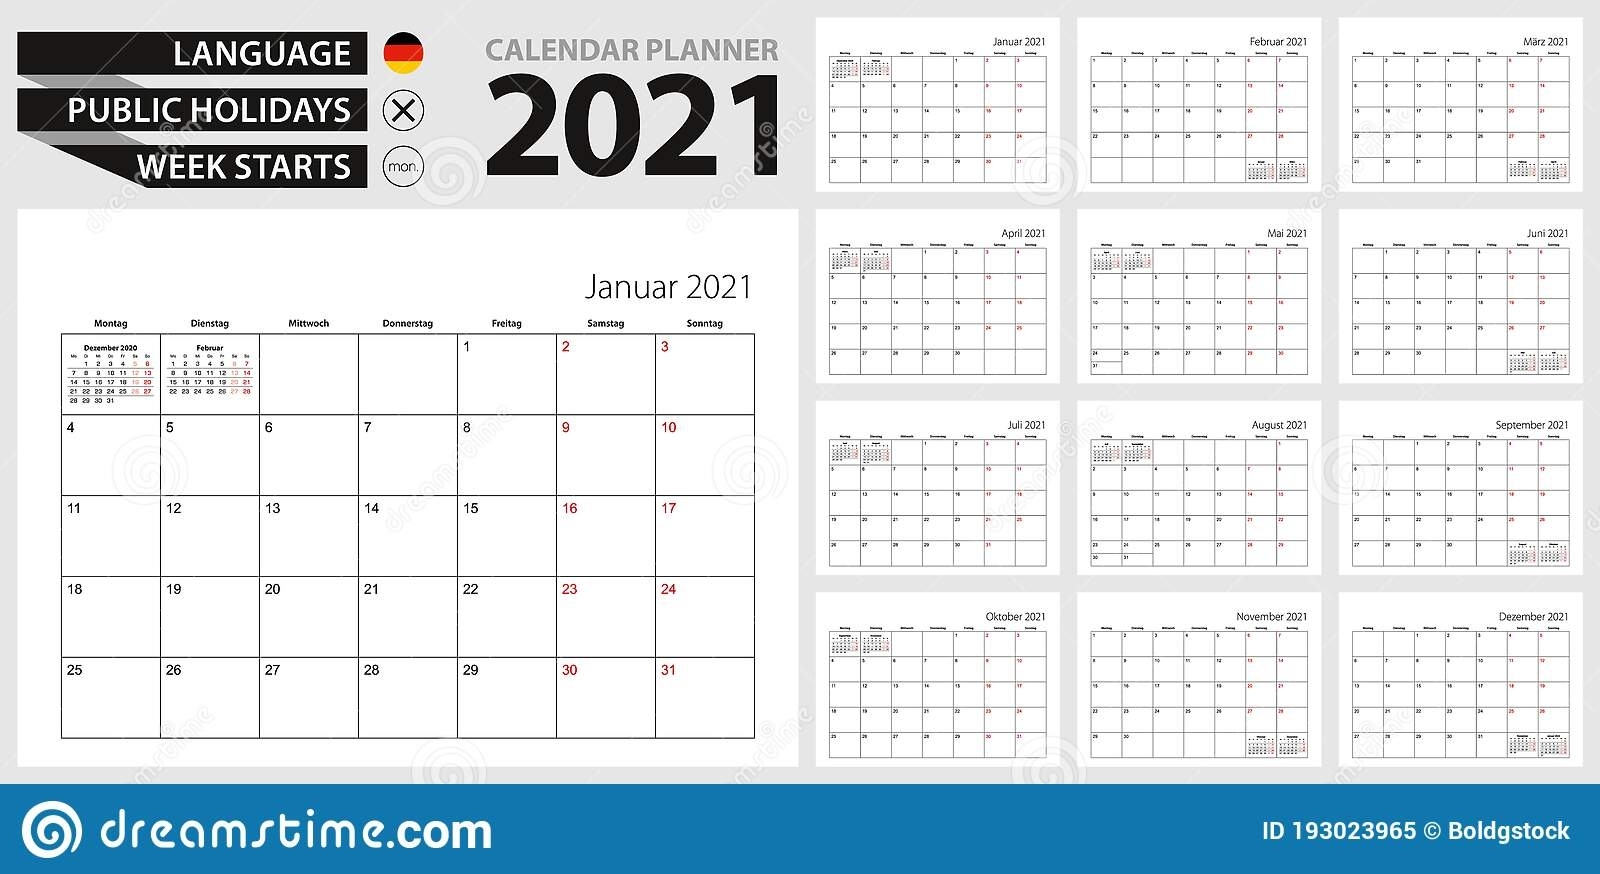 German Calendar Planner For 2021. German Language, Week